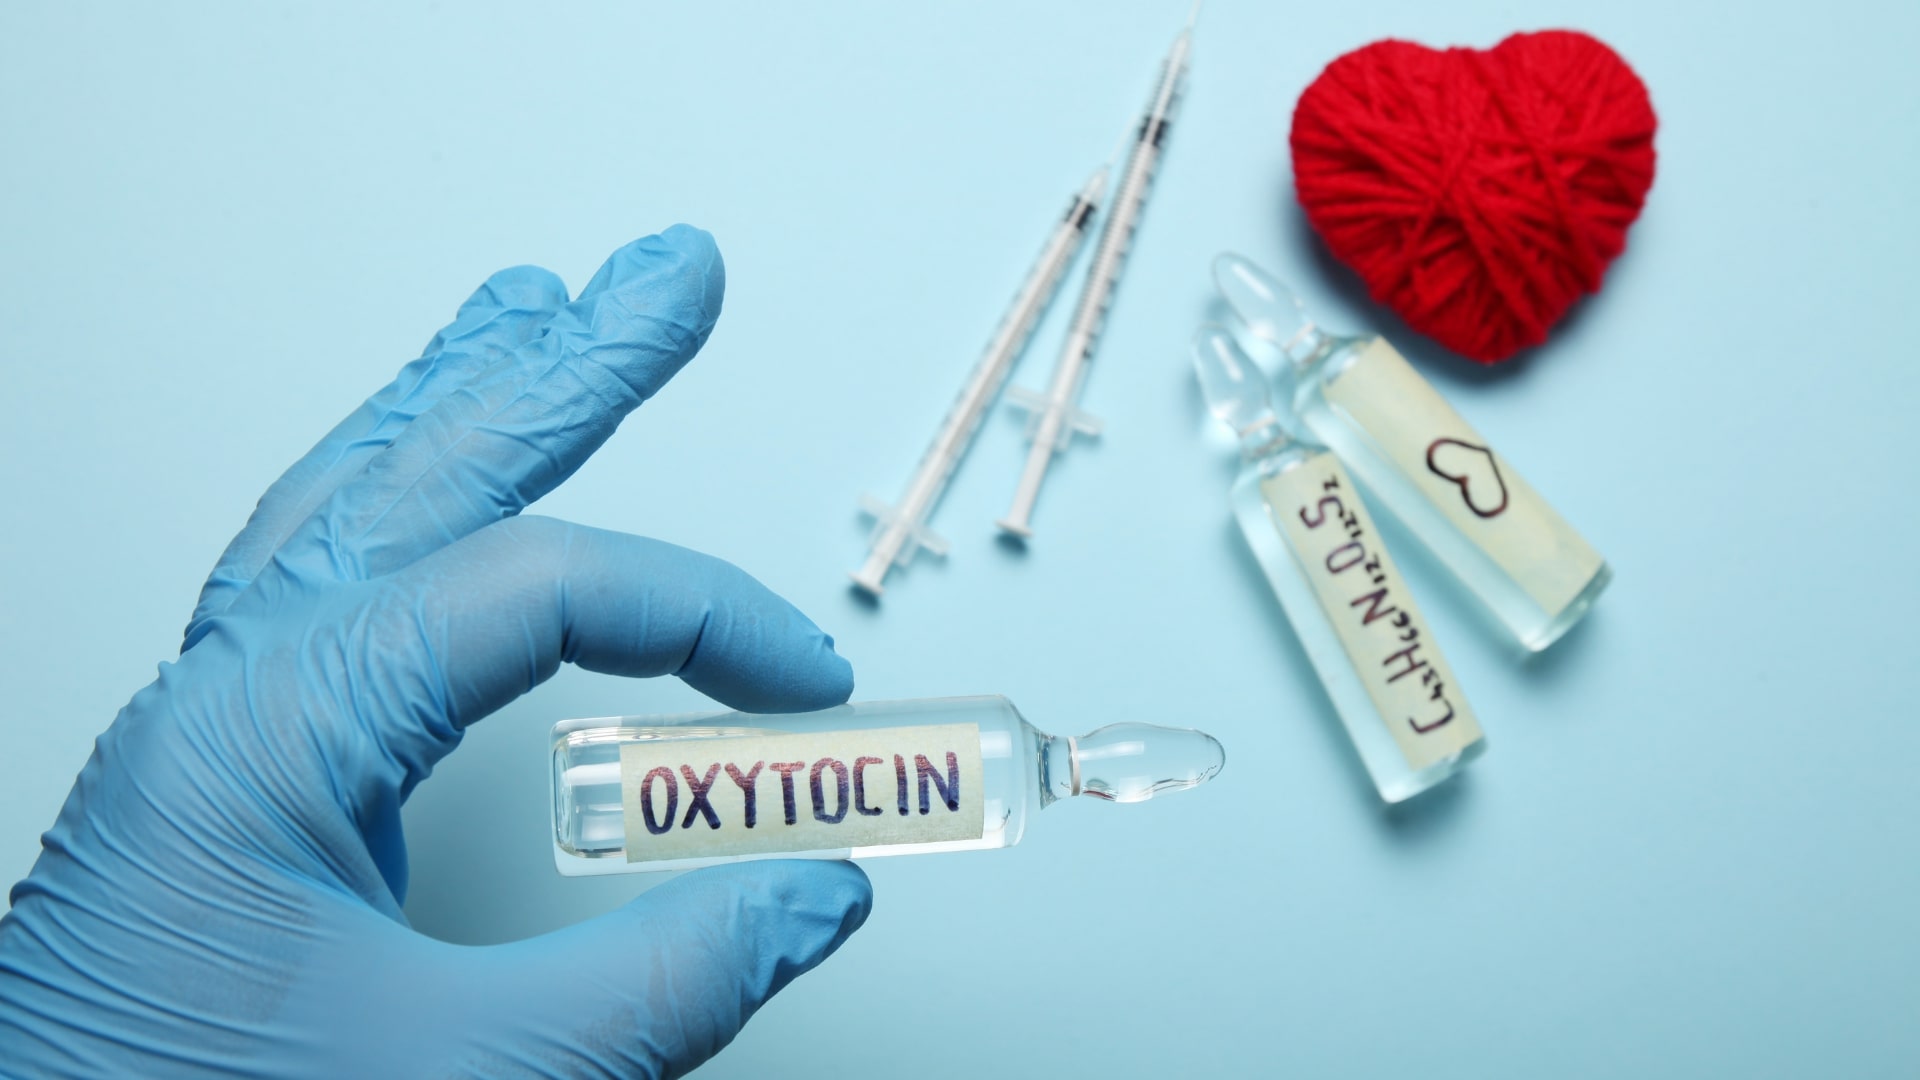 Erecția oxitocinei, Sex dimineata- beneficii pentru sanatate